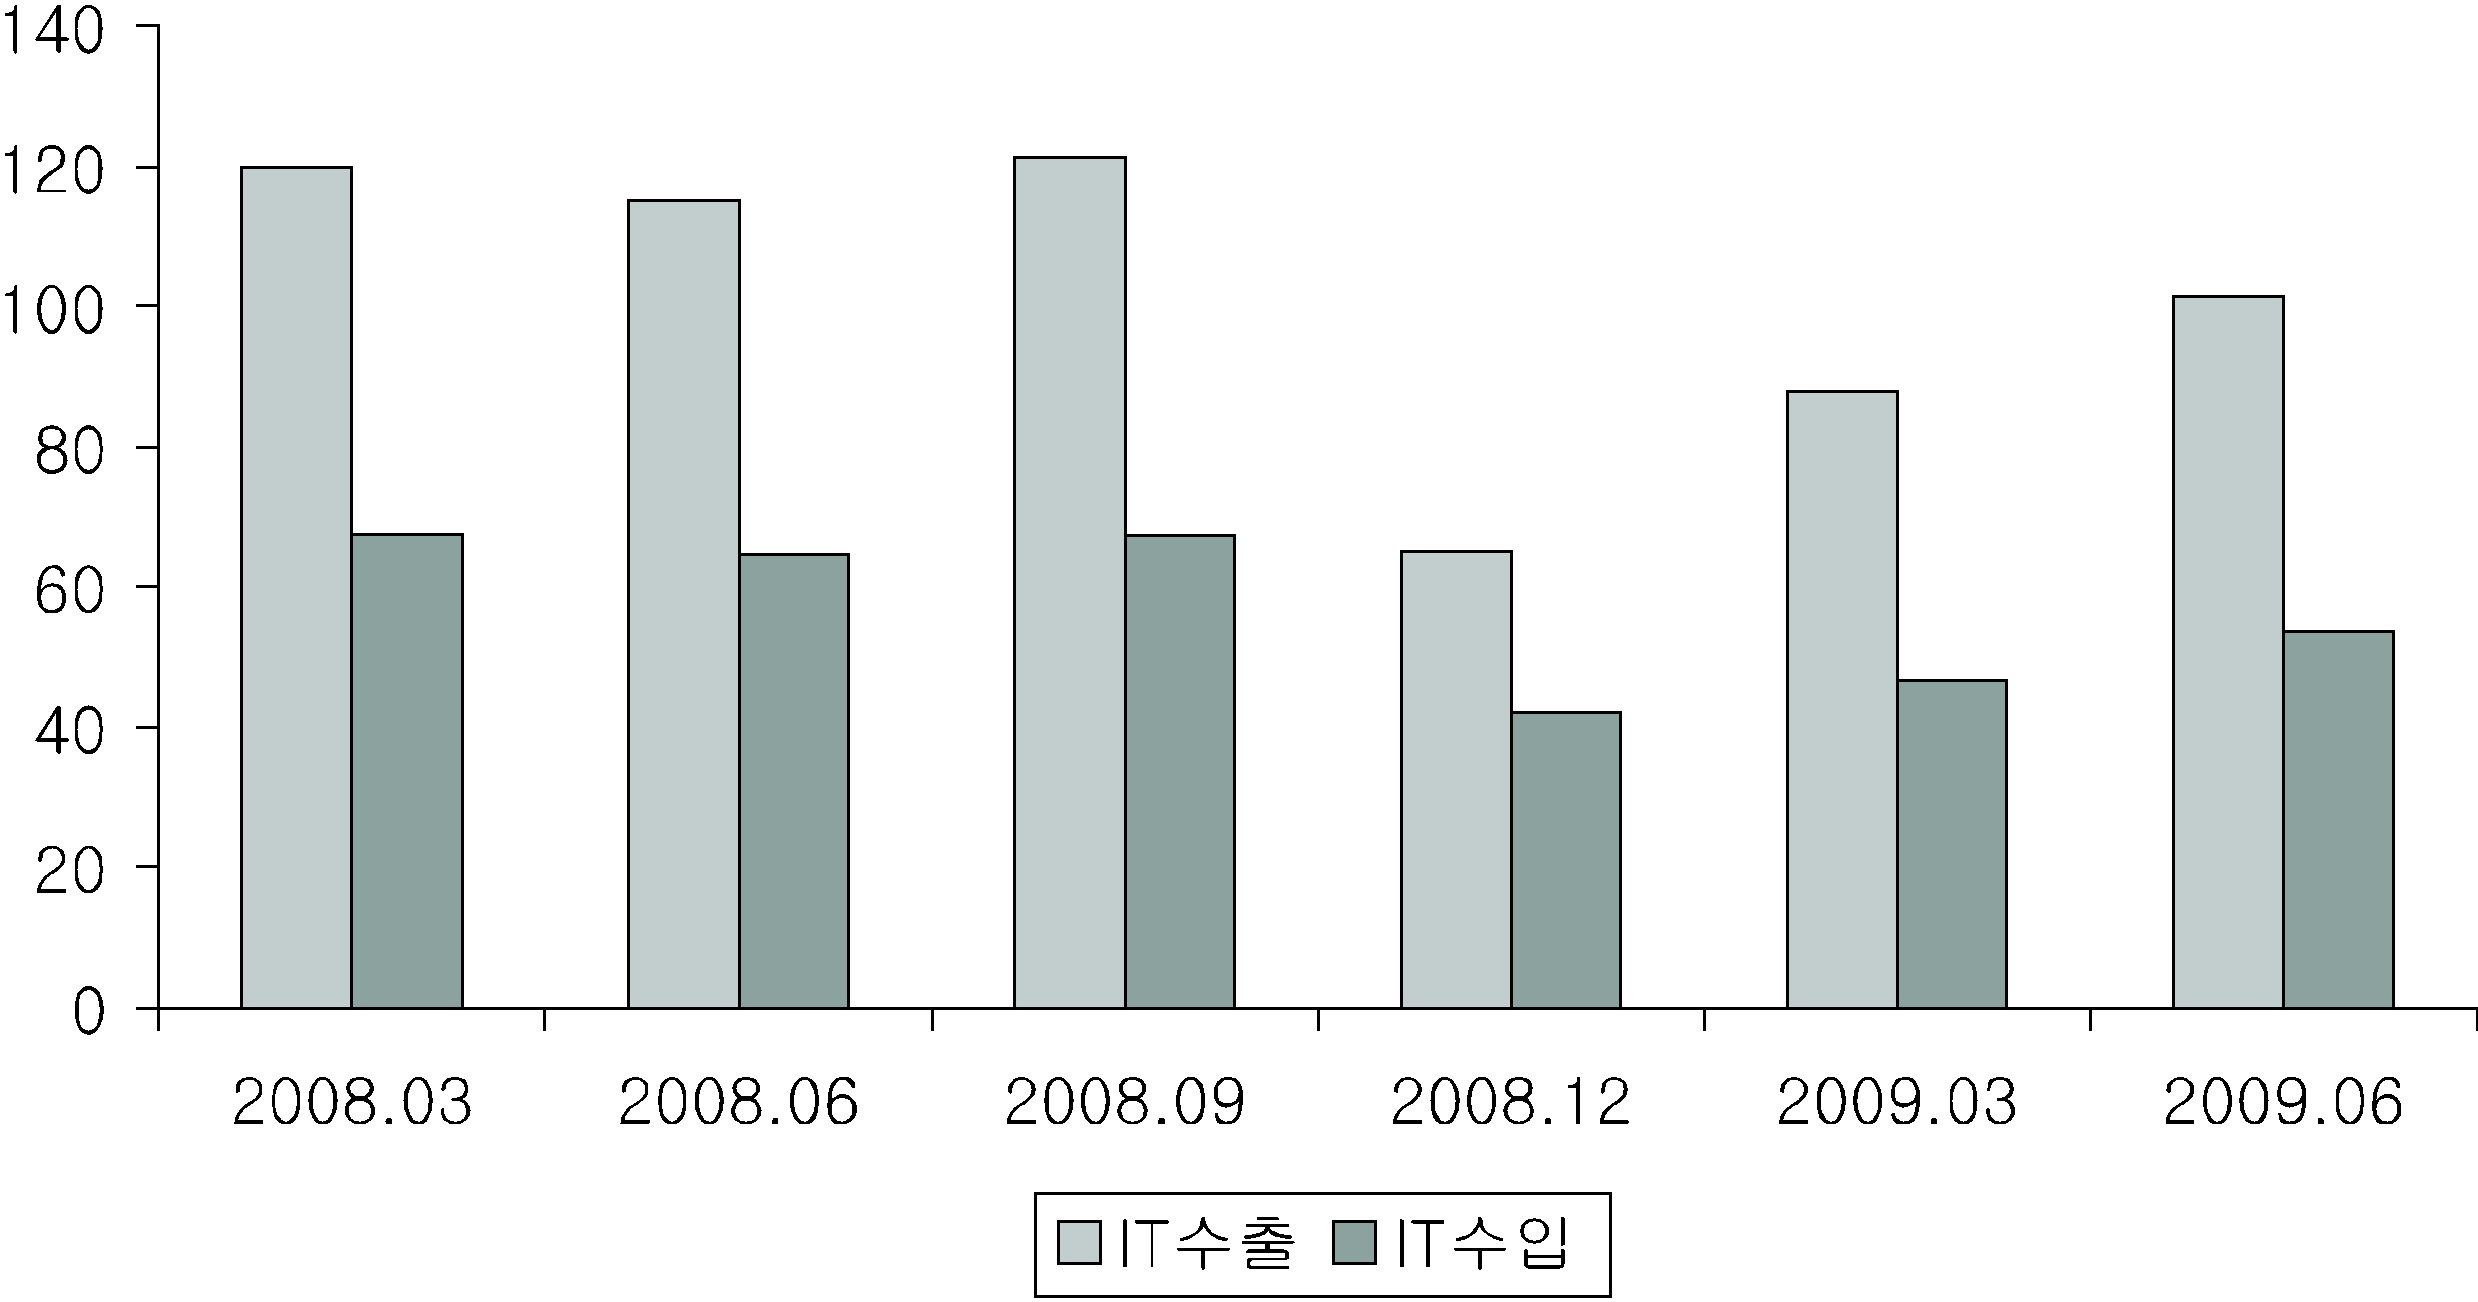 약 3% 감소하는데 그쳤다. 그러나 2009년 1분기 이후 국제 경기가 회복세에 접어듦 에 따라 한국의 IT산업 역시 성장세를 회복하는 추세에 있다. [그림 3] 2008~2009년 국내 IT산업 수출입 동향 (단위: 억 원) 출처: IT통계포탈, http://www.itstat.go.